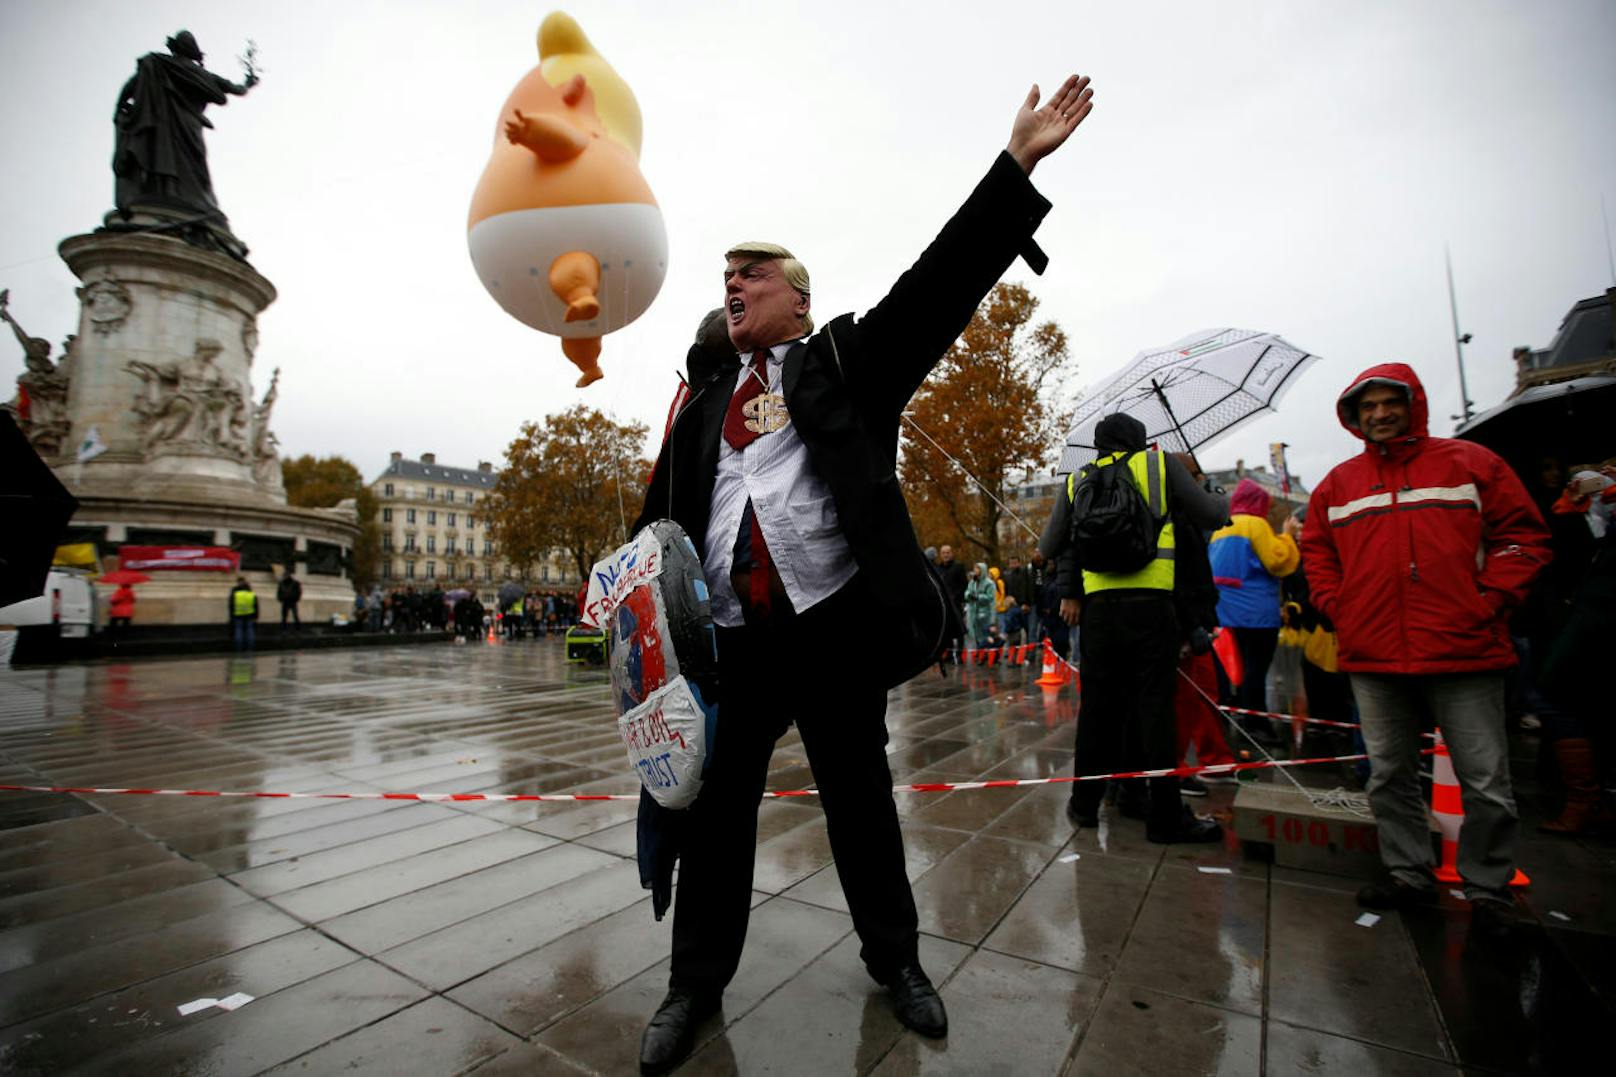 Linke Gruppierungen demonstrierten gegen den US-Präsidenten - ausgerüstet mit Trump-Masken und einem 6 Meter hohen Baby-Donald-Ballon.